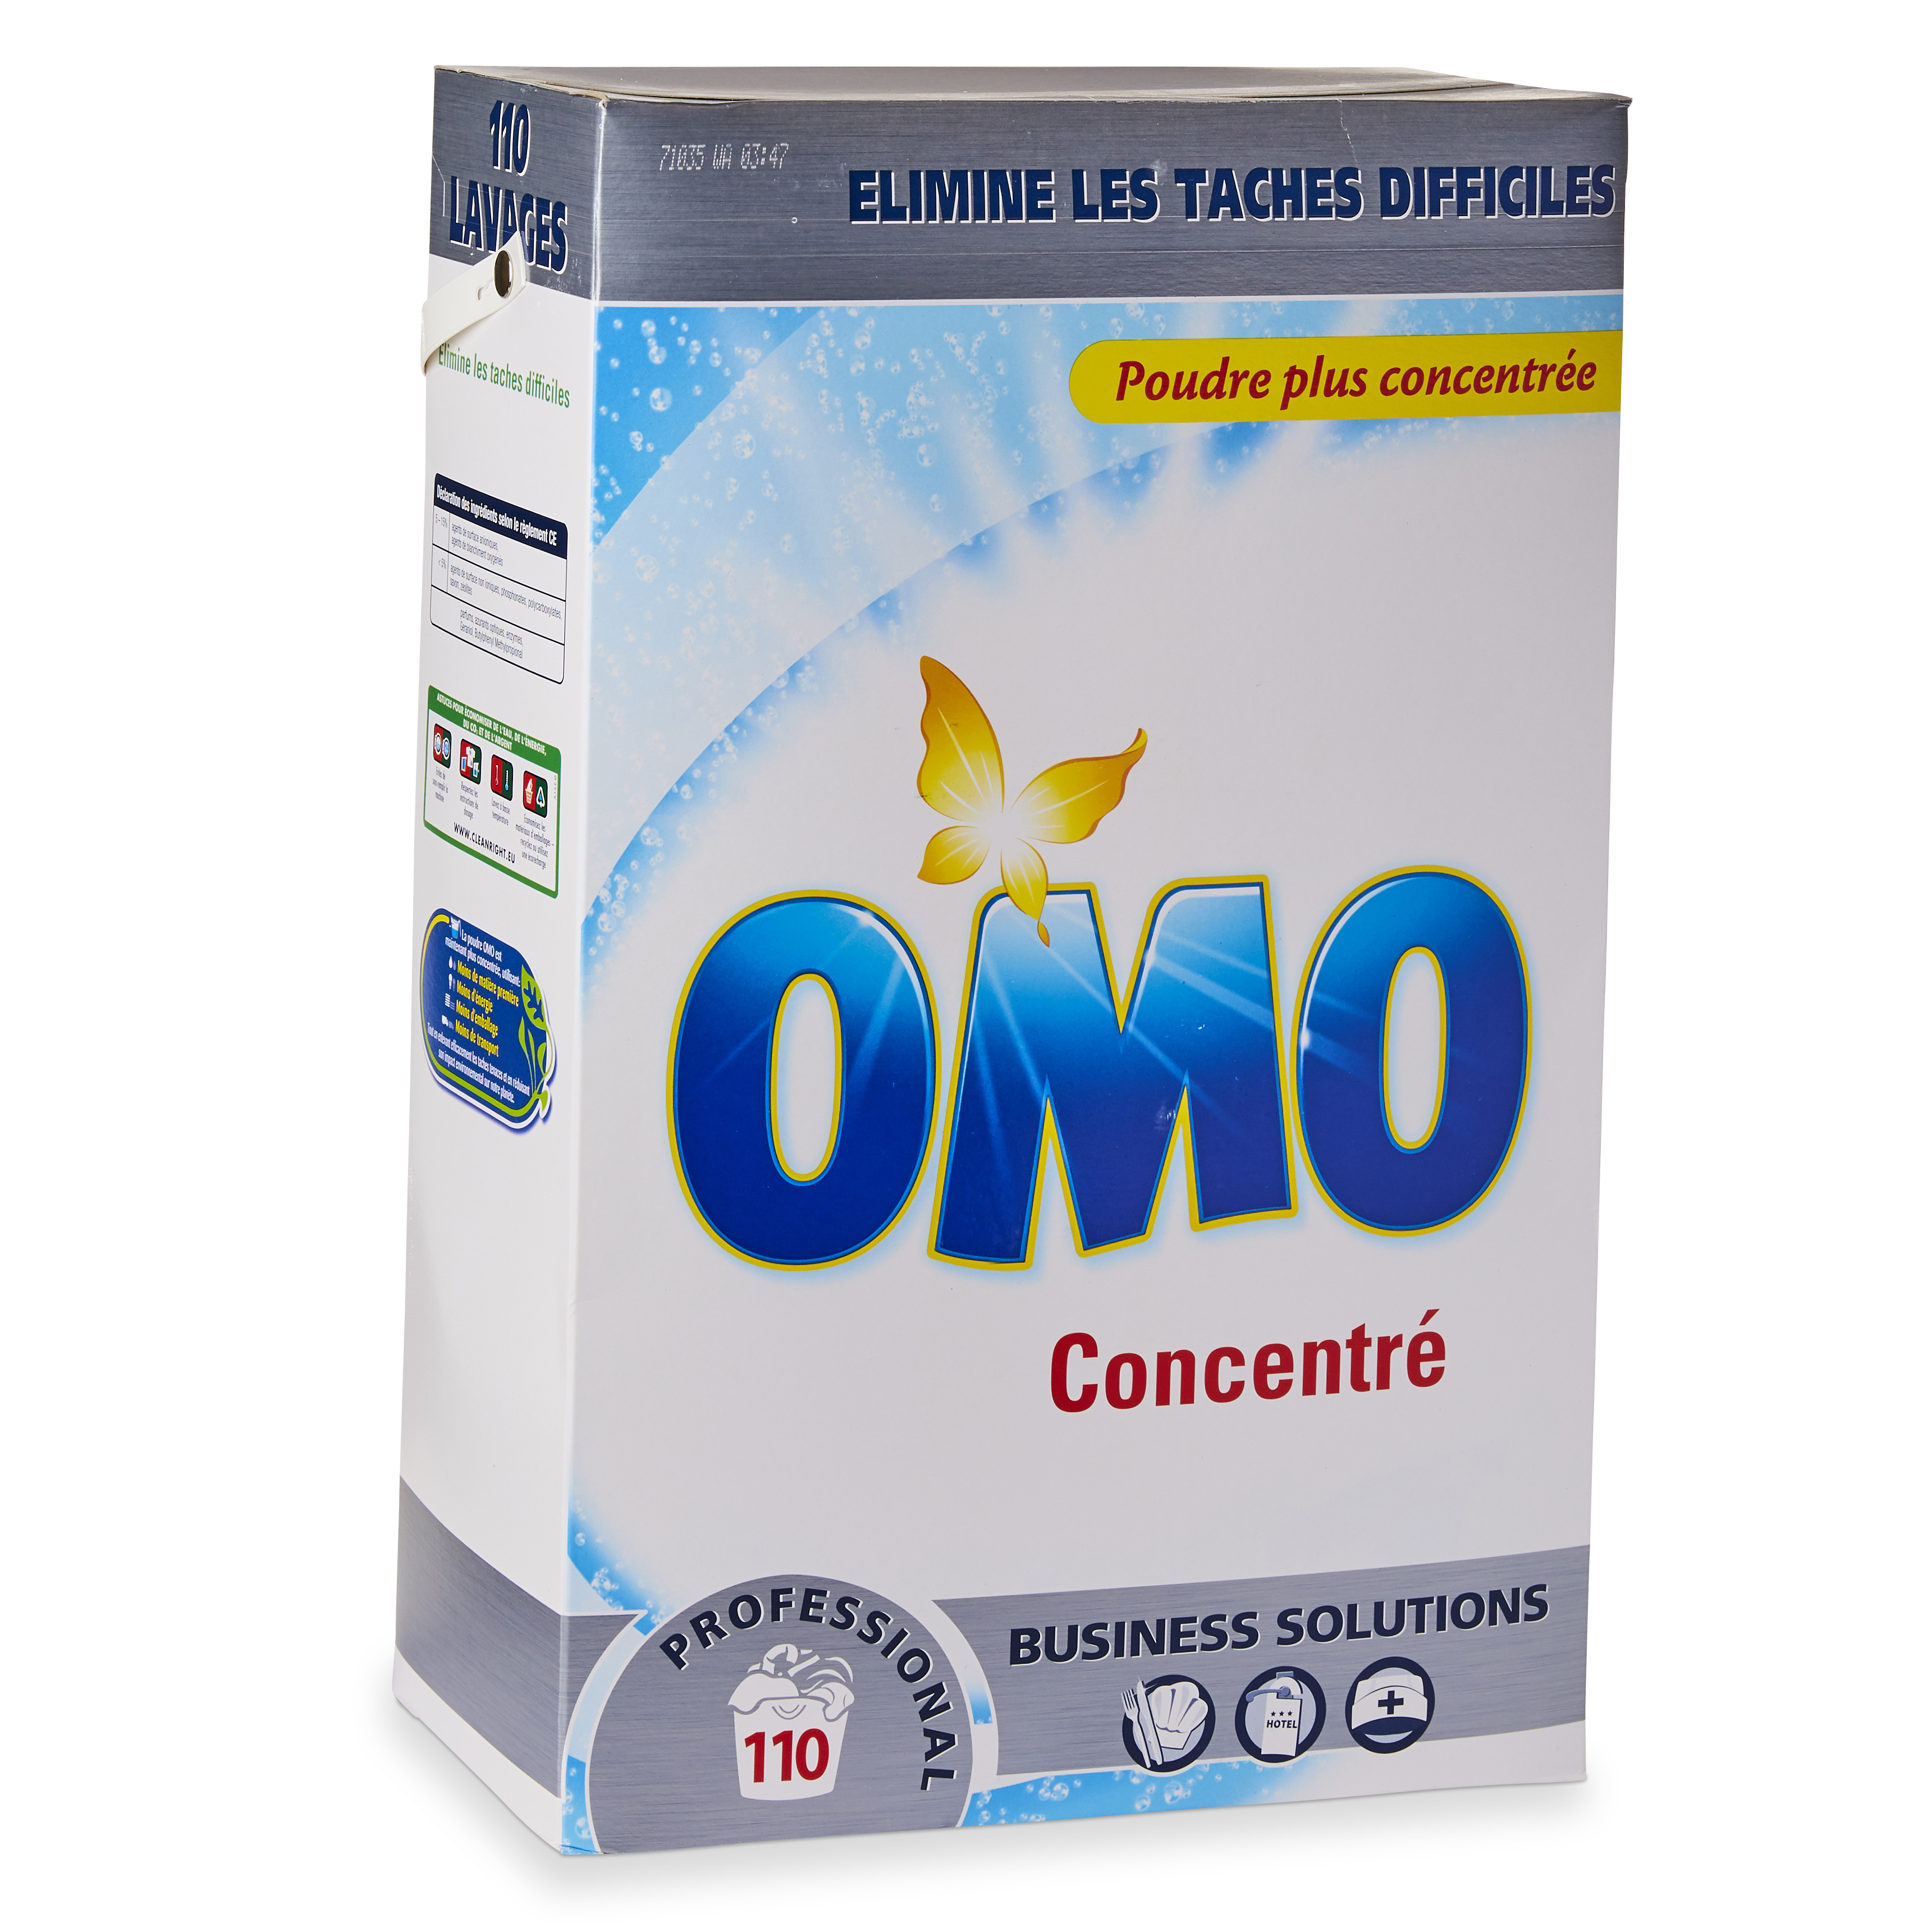 Lessive Omo Pro Formula poudre Color 8,4kg 120 lavages on